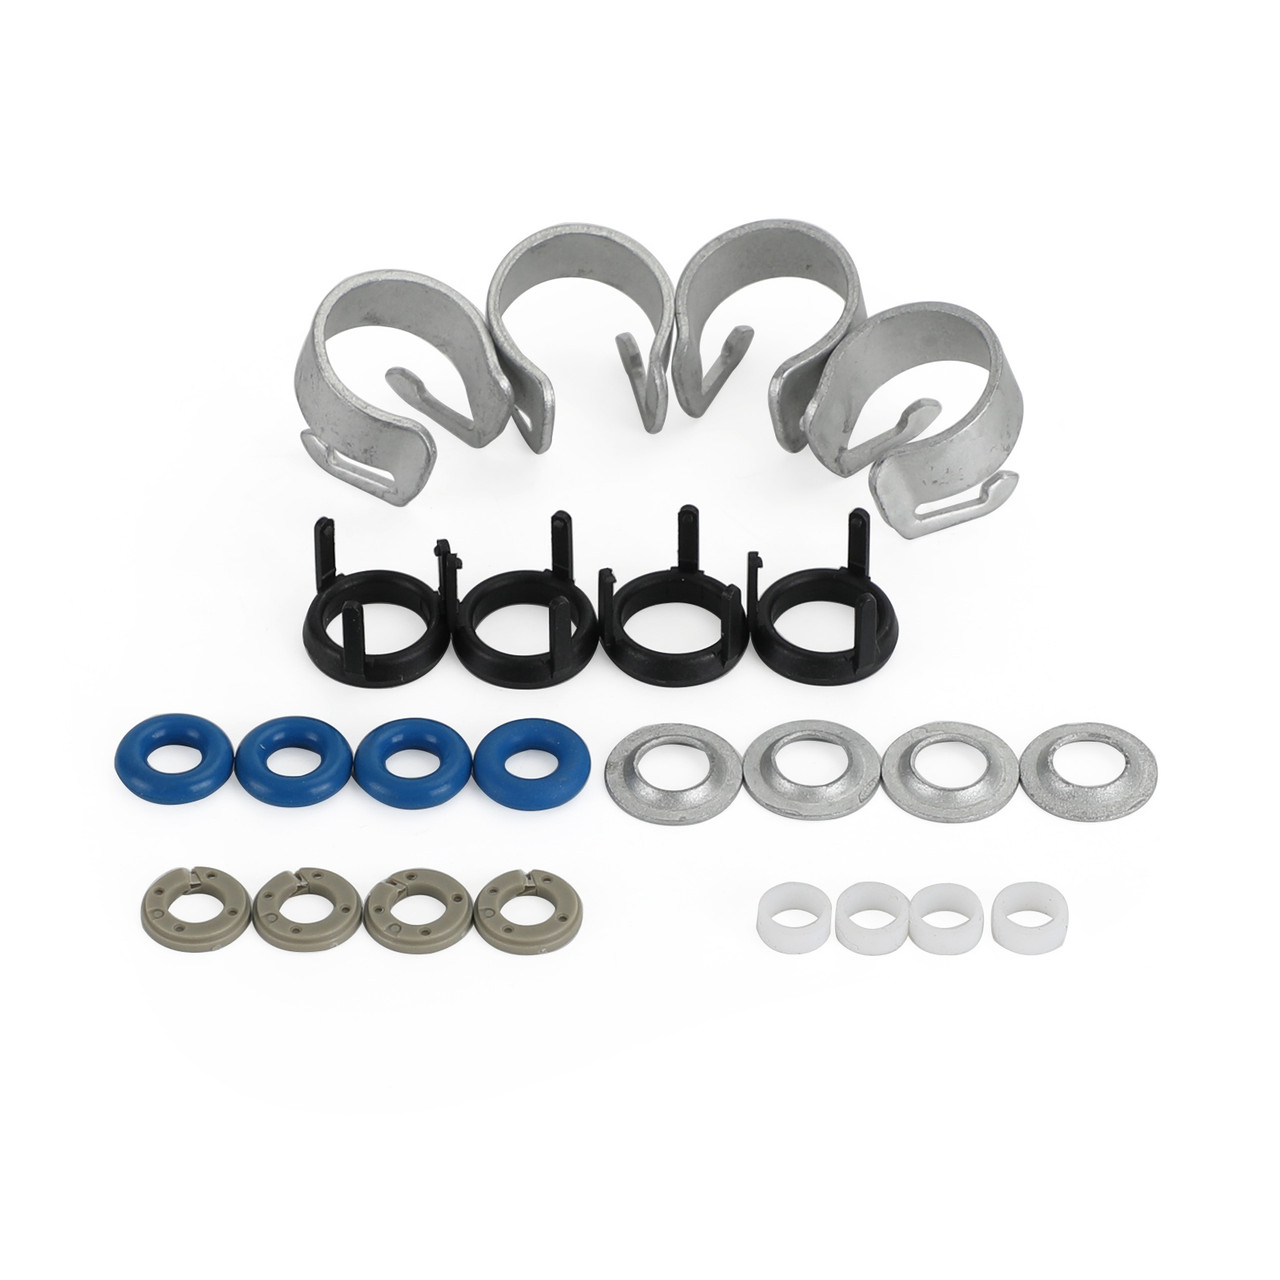 Fuel Injectors O-ring Seals Repair Kits Fit For Volkswagen Jetta Passat Tiguan Beetle GTI GLI Golf CC